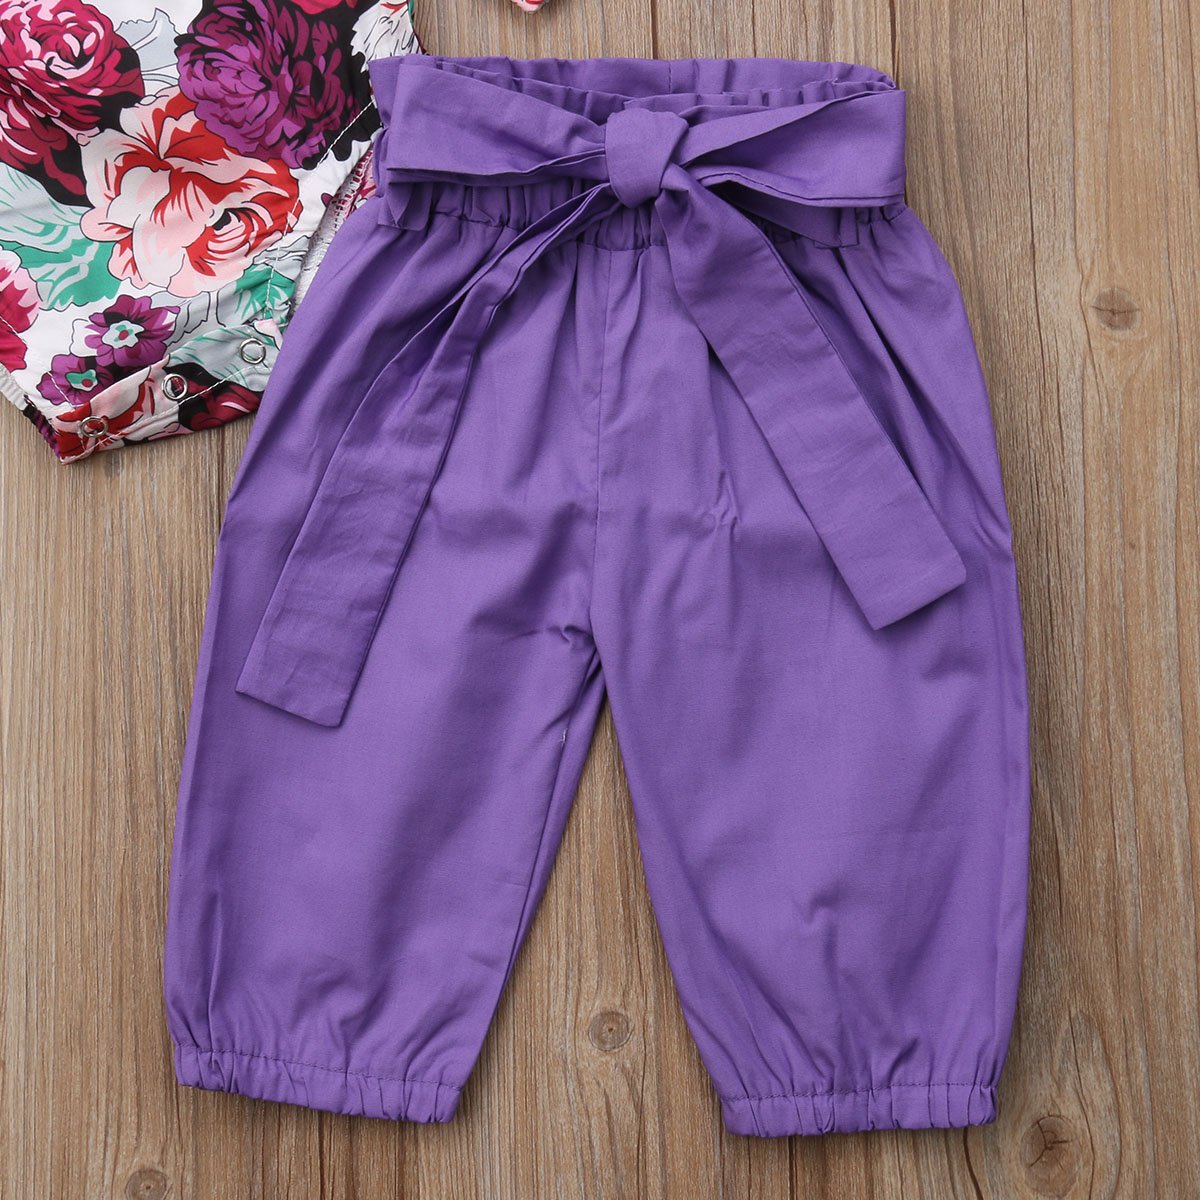 Conjunto de ropa para bebés y niñas, mameluco, pantalones florales, polainas